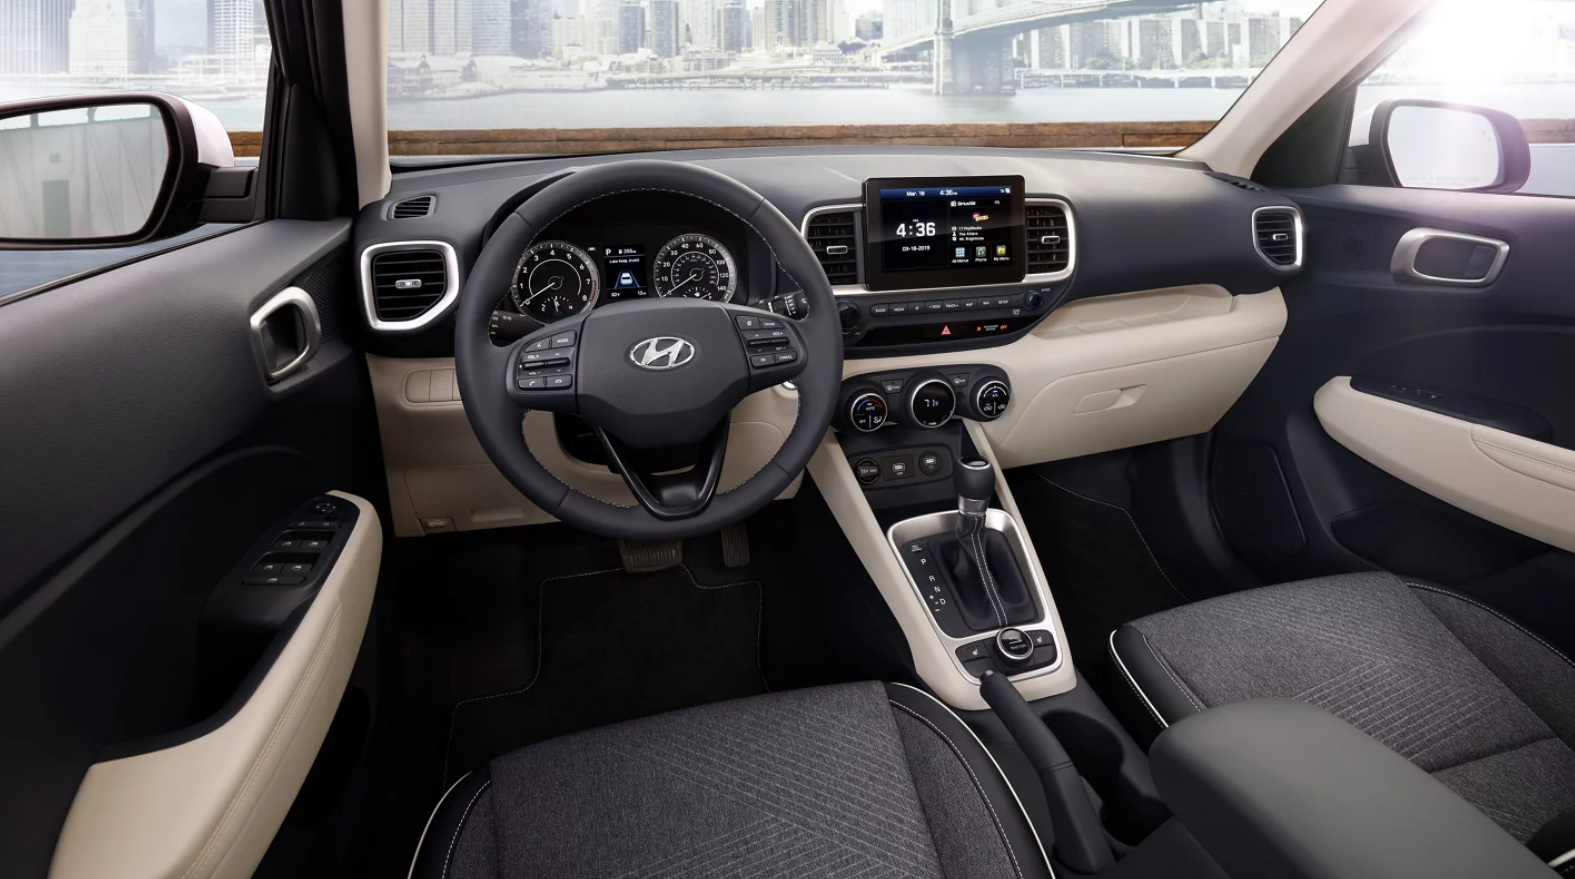 Hyundai Venue interior - Cockpit